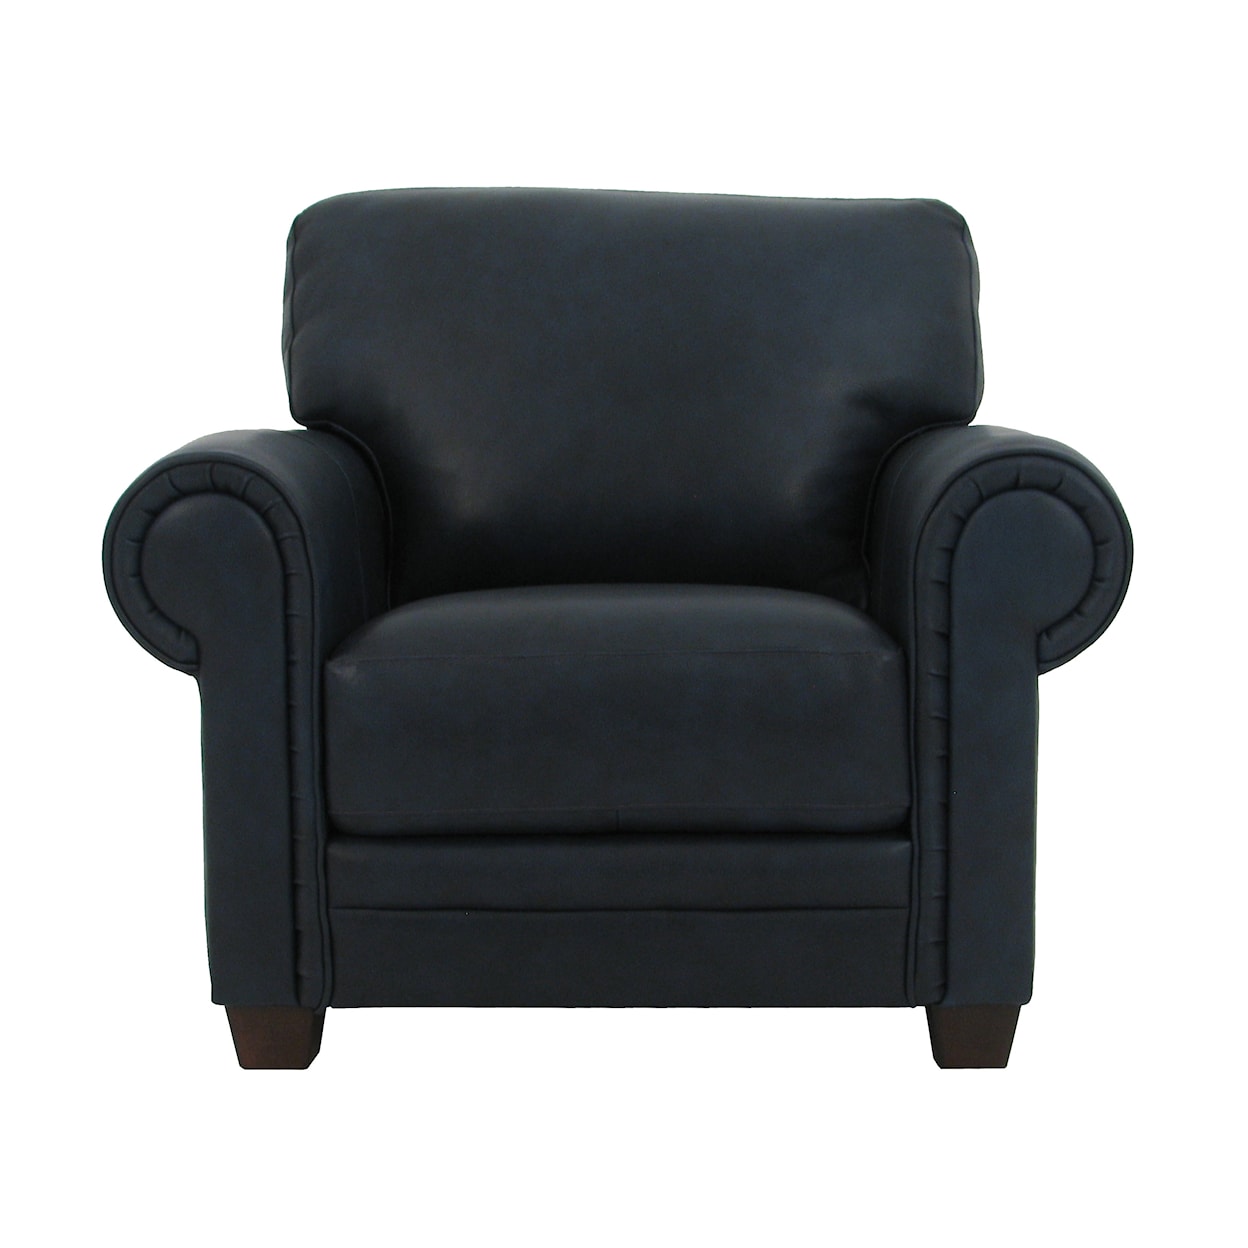 Virginia Furniture Market Premium Leather 7751 Chair